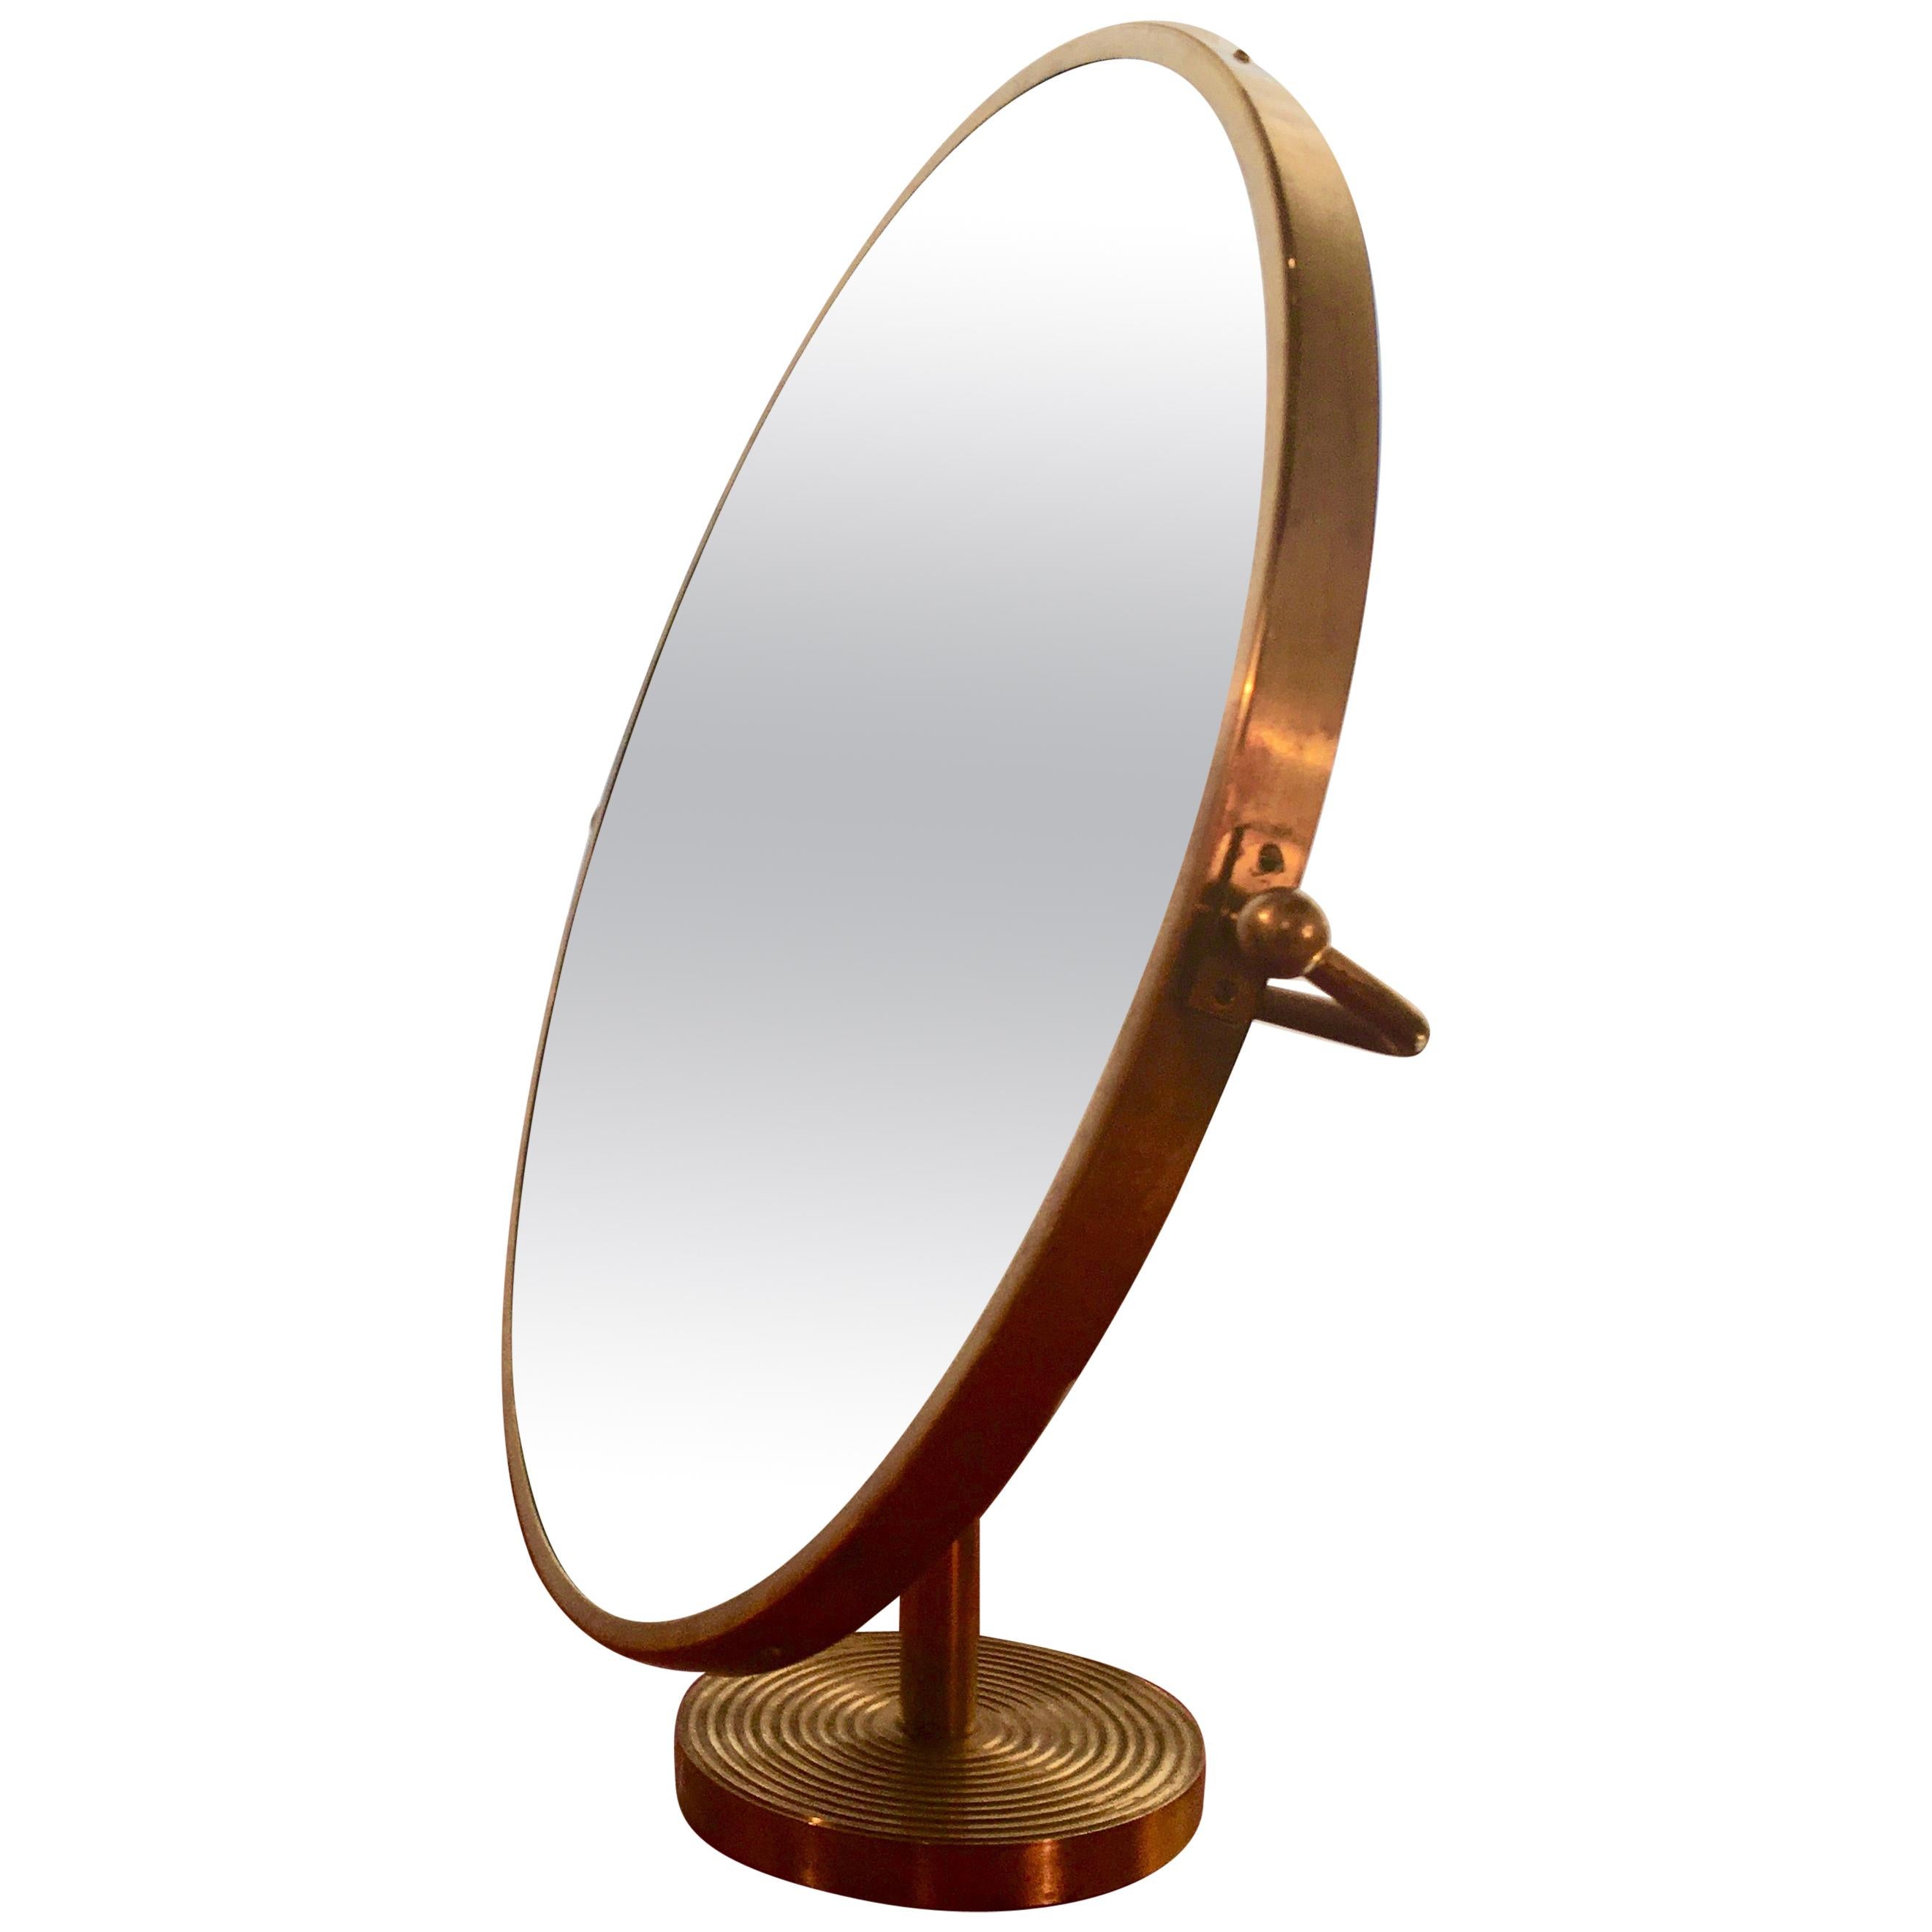 Large Brass Table Mirror Designed by Josef Frank for Svenst, Swede, 1940